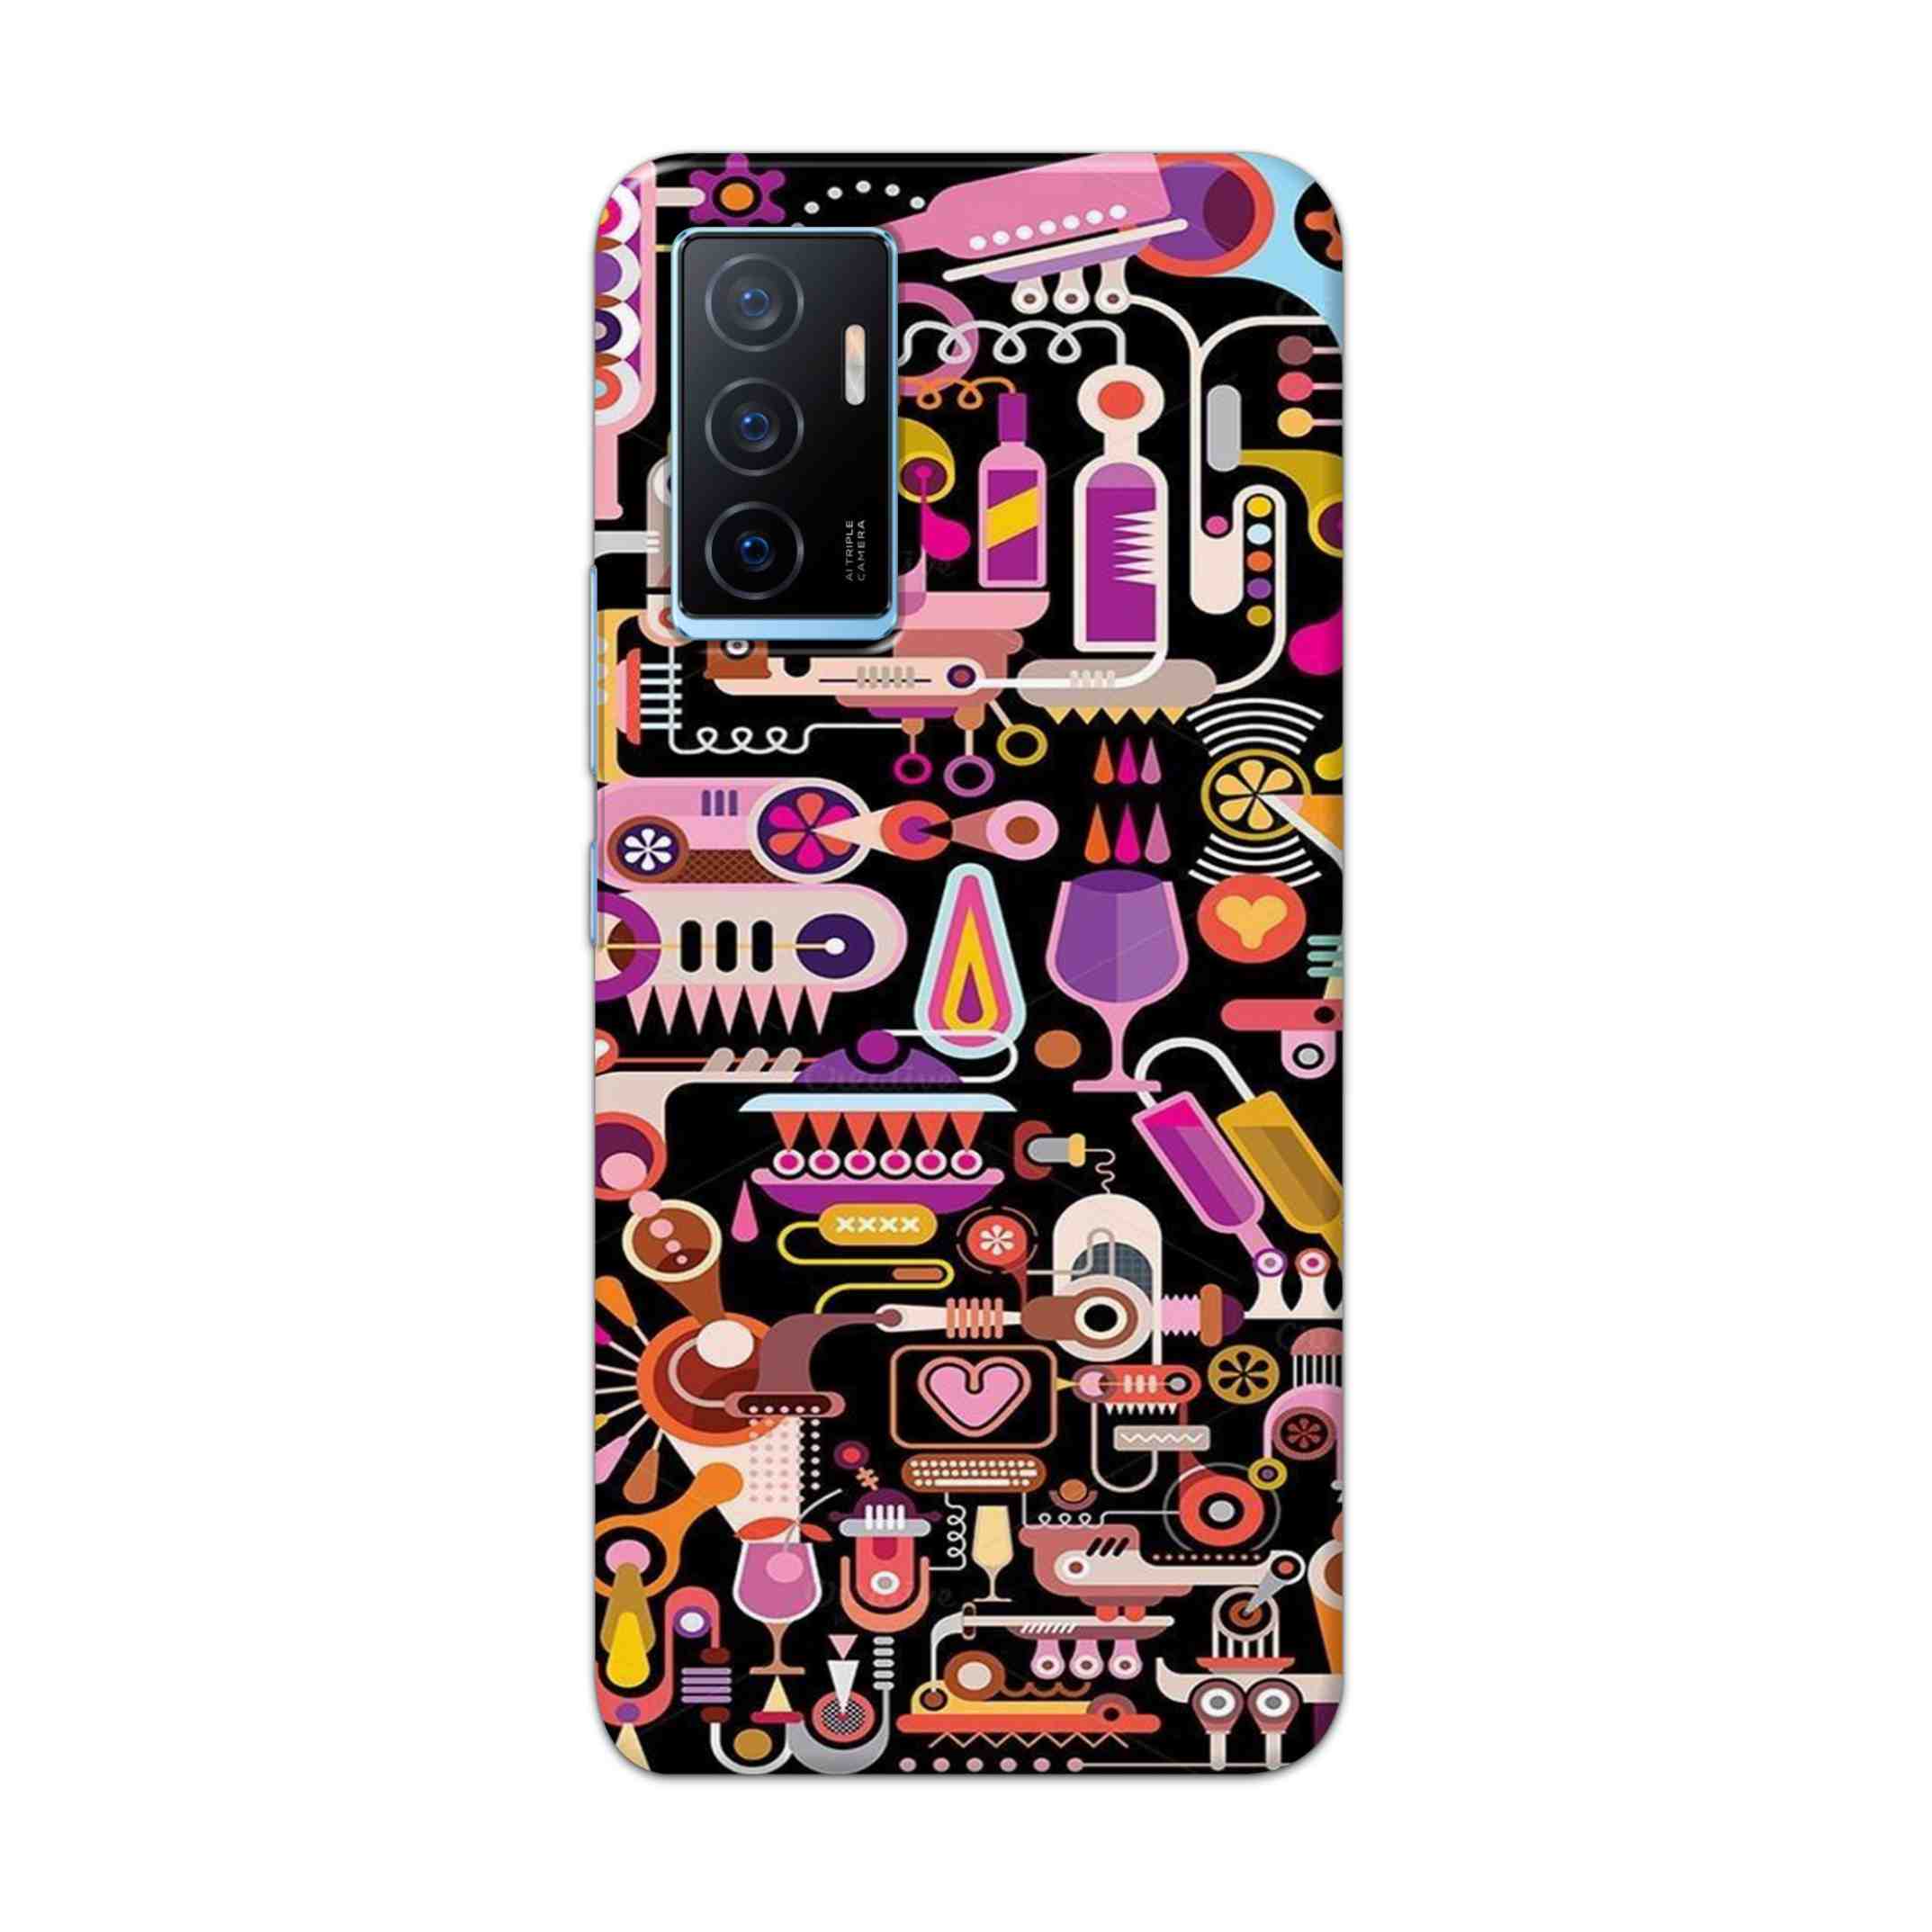 Buy Lab Art Hard Back Mobile Phone Case Cover For Vivo Y75 4G Online